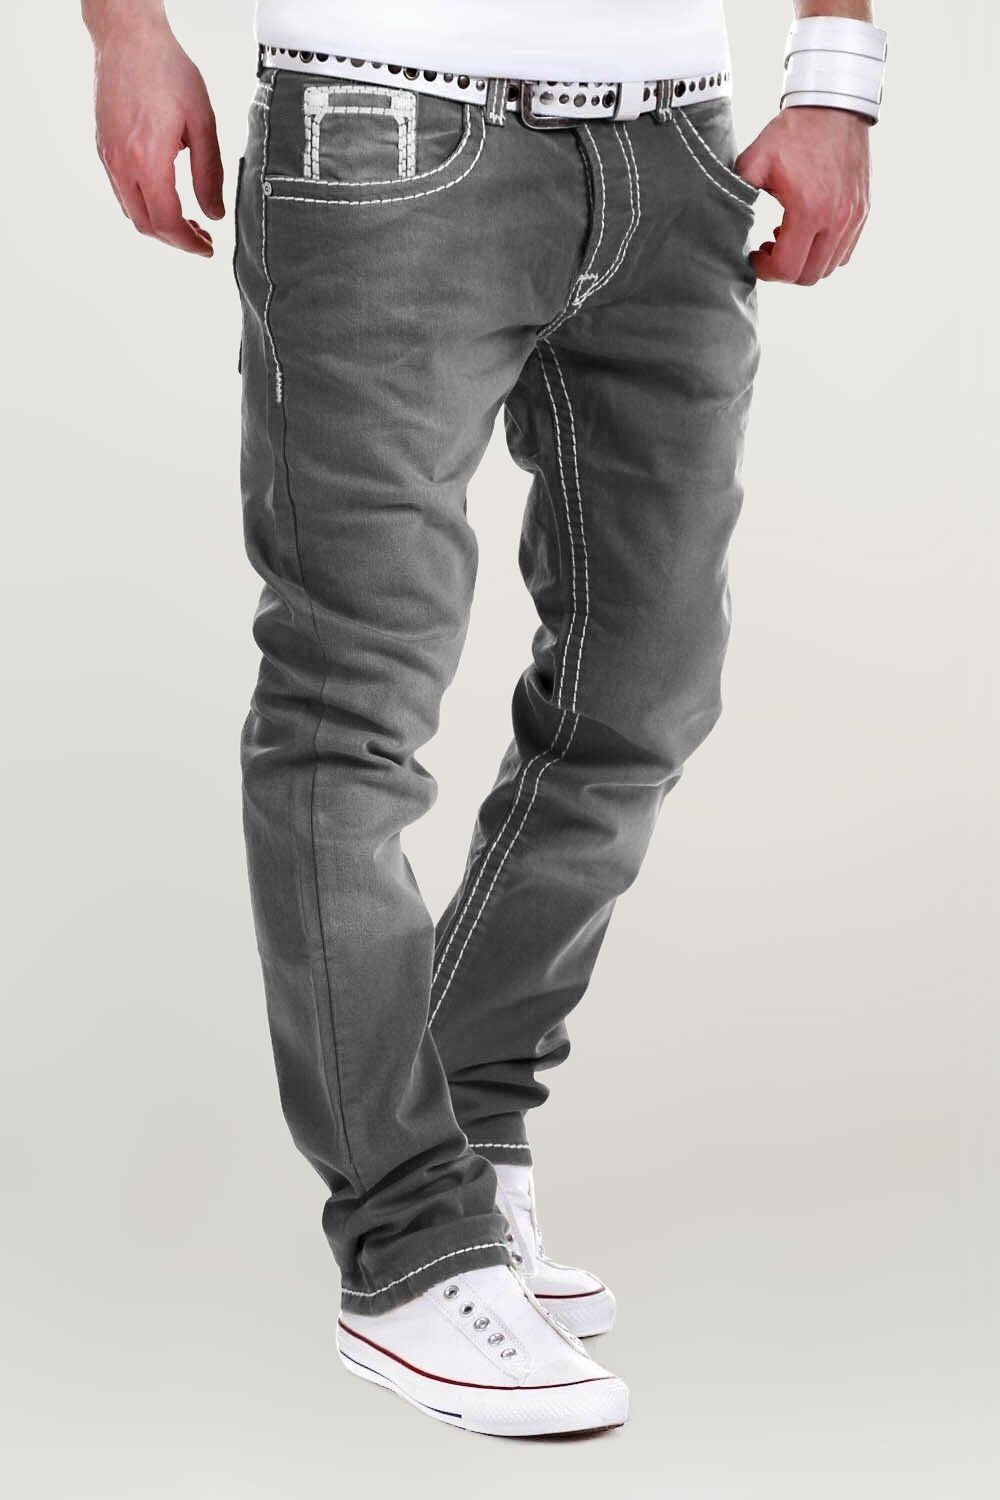 behype Jeans Stitch grau Bequeme mit Kontrastnähten dicken